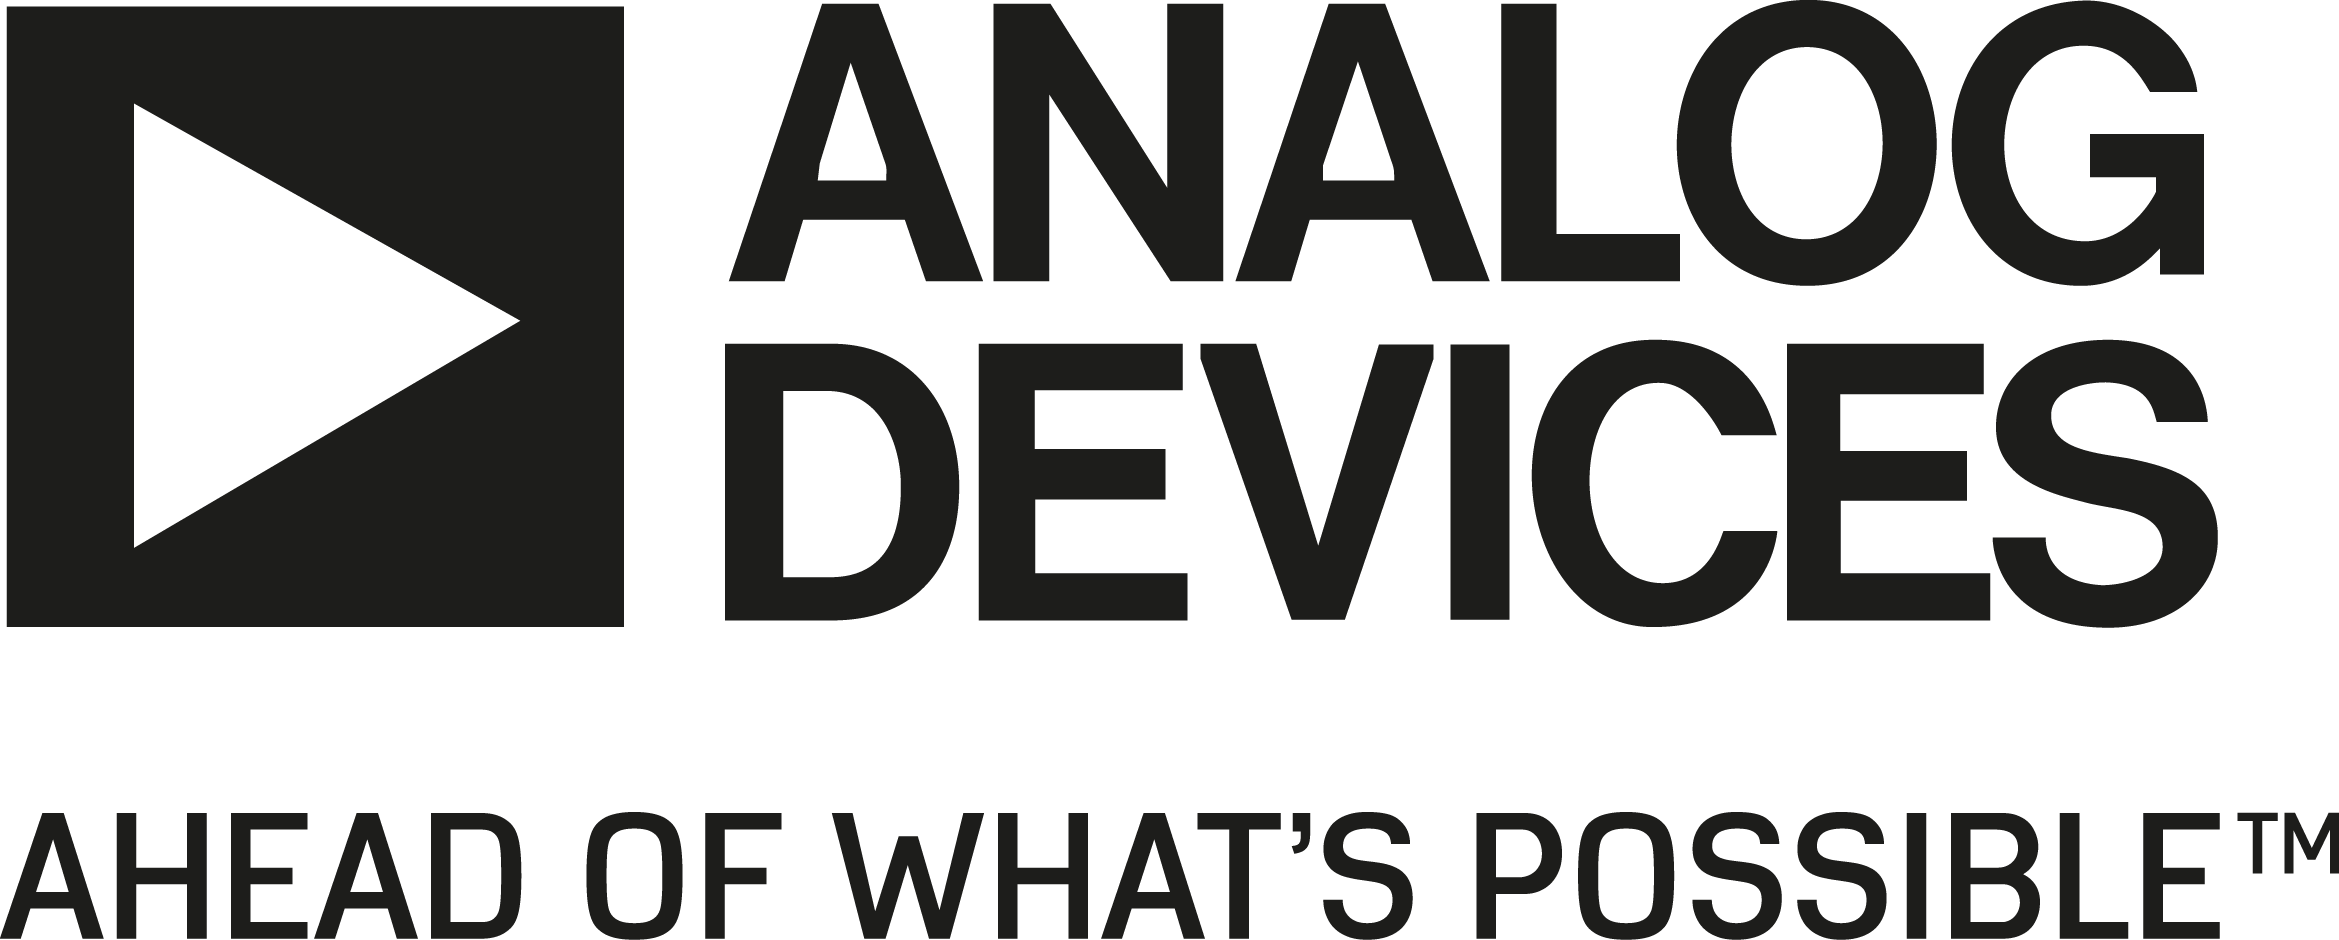 Analog Logo png